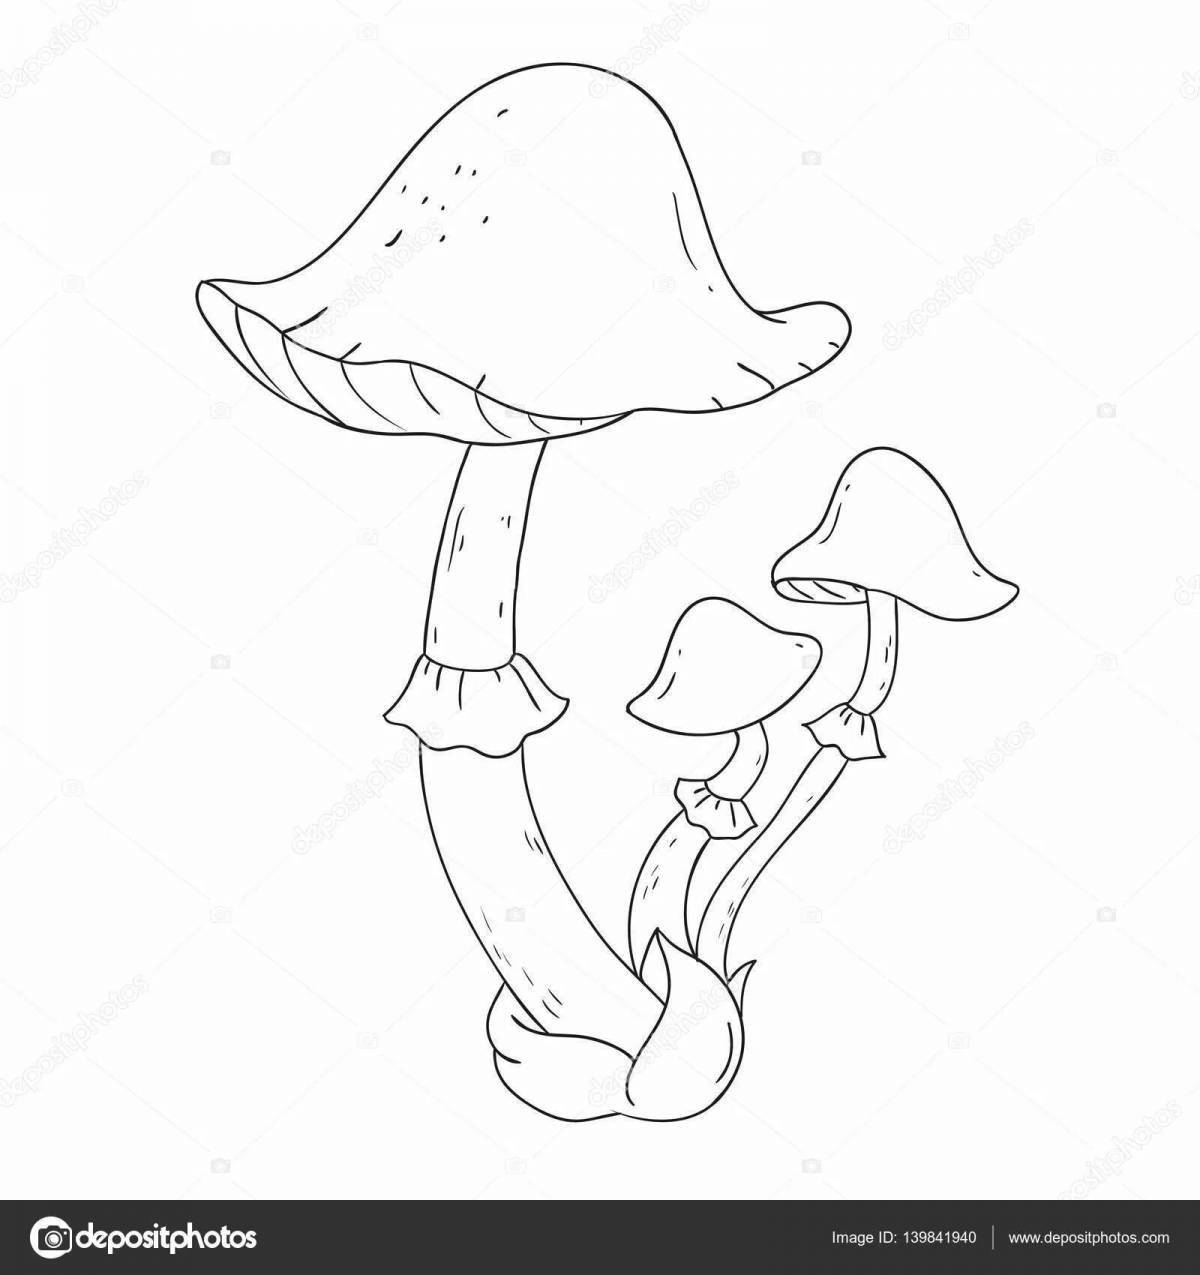 Incredible toadstool mushrooms